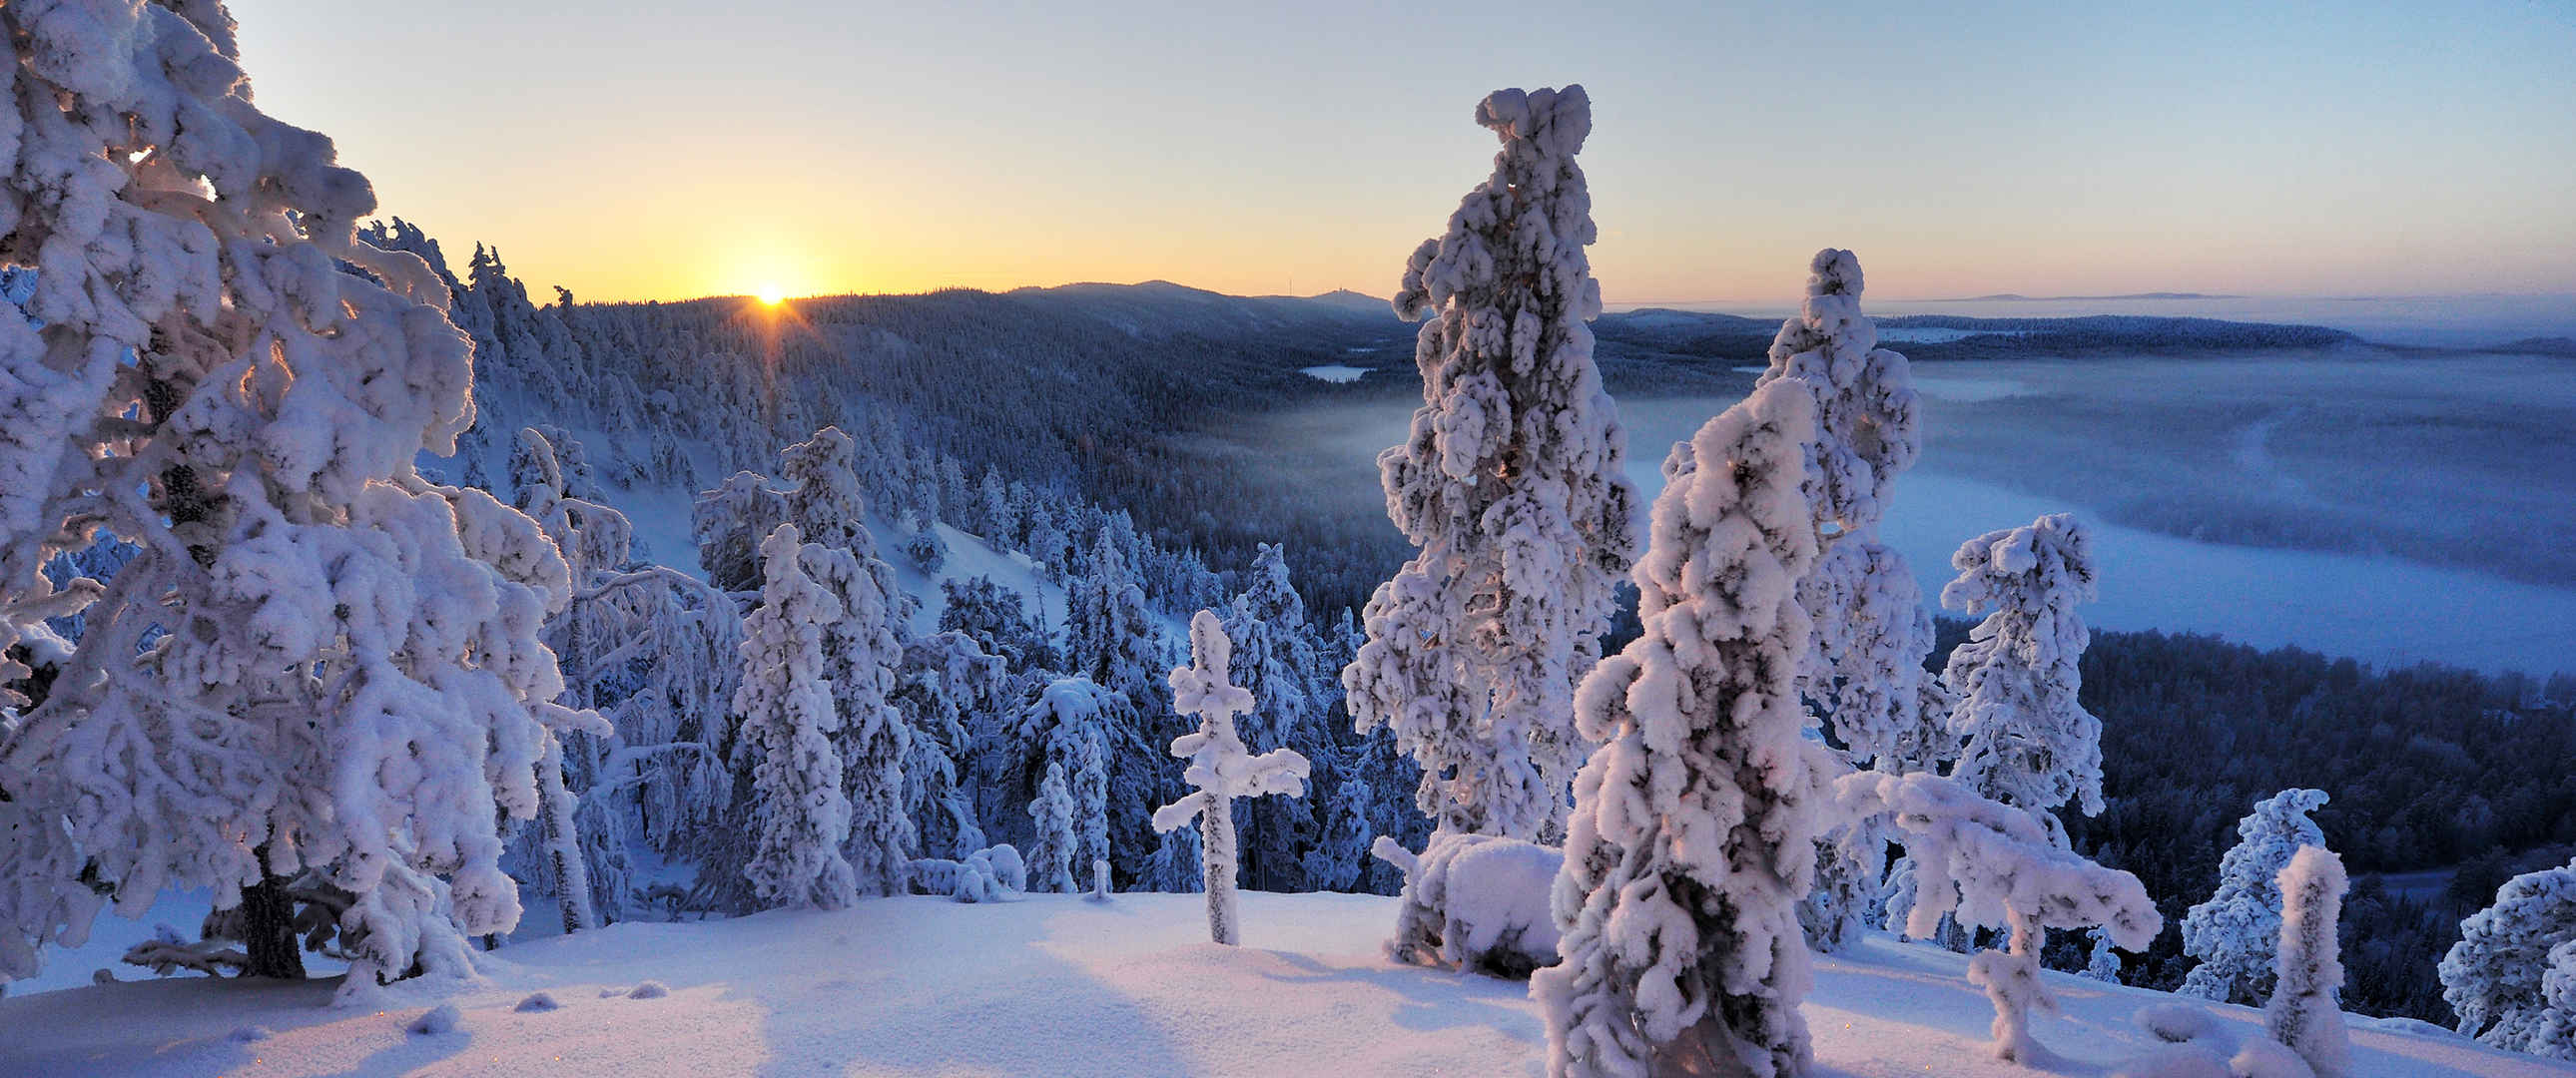 芬兰冬天雪景3440x1440桌面壁纸